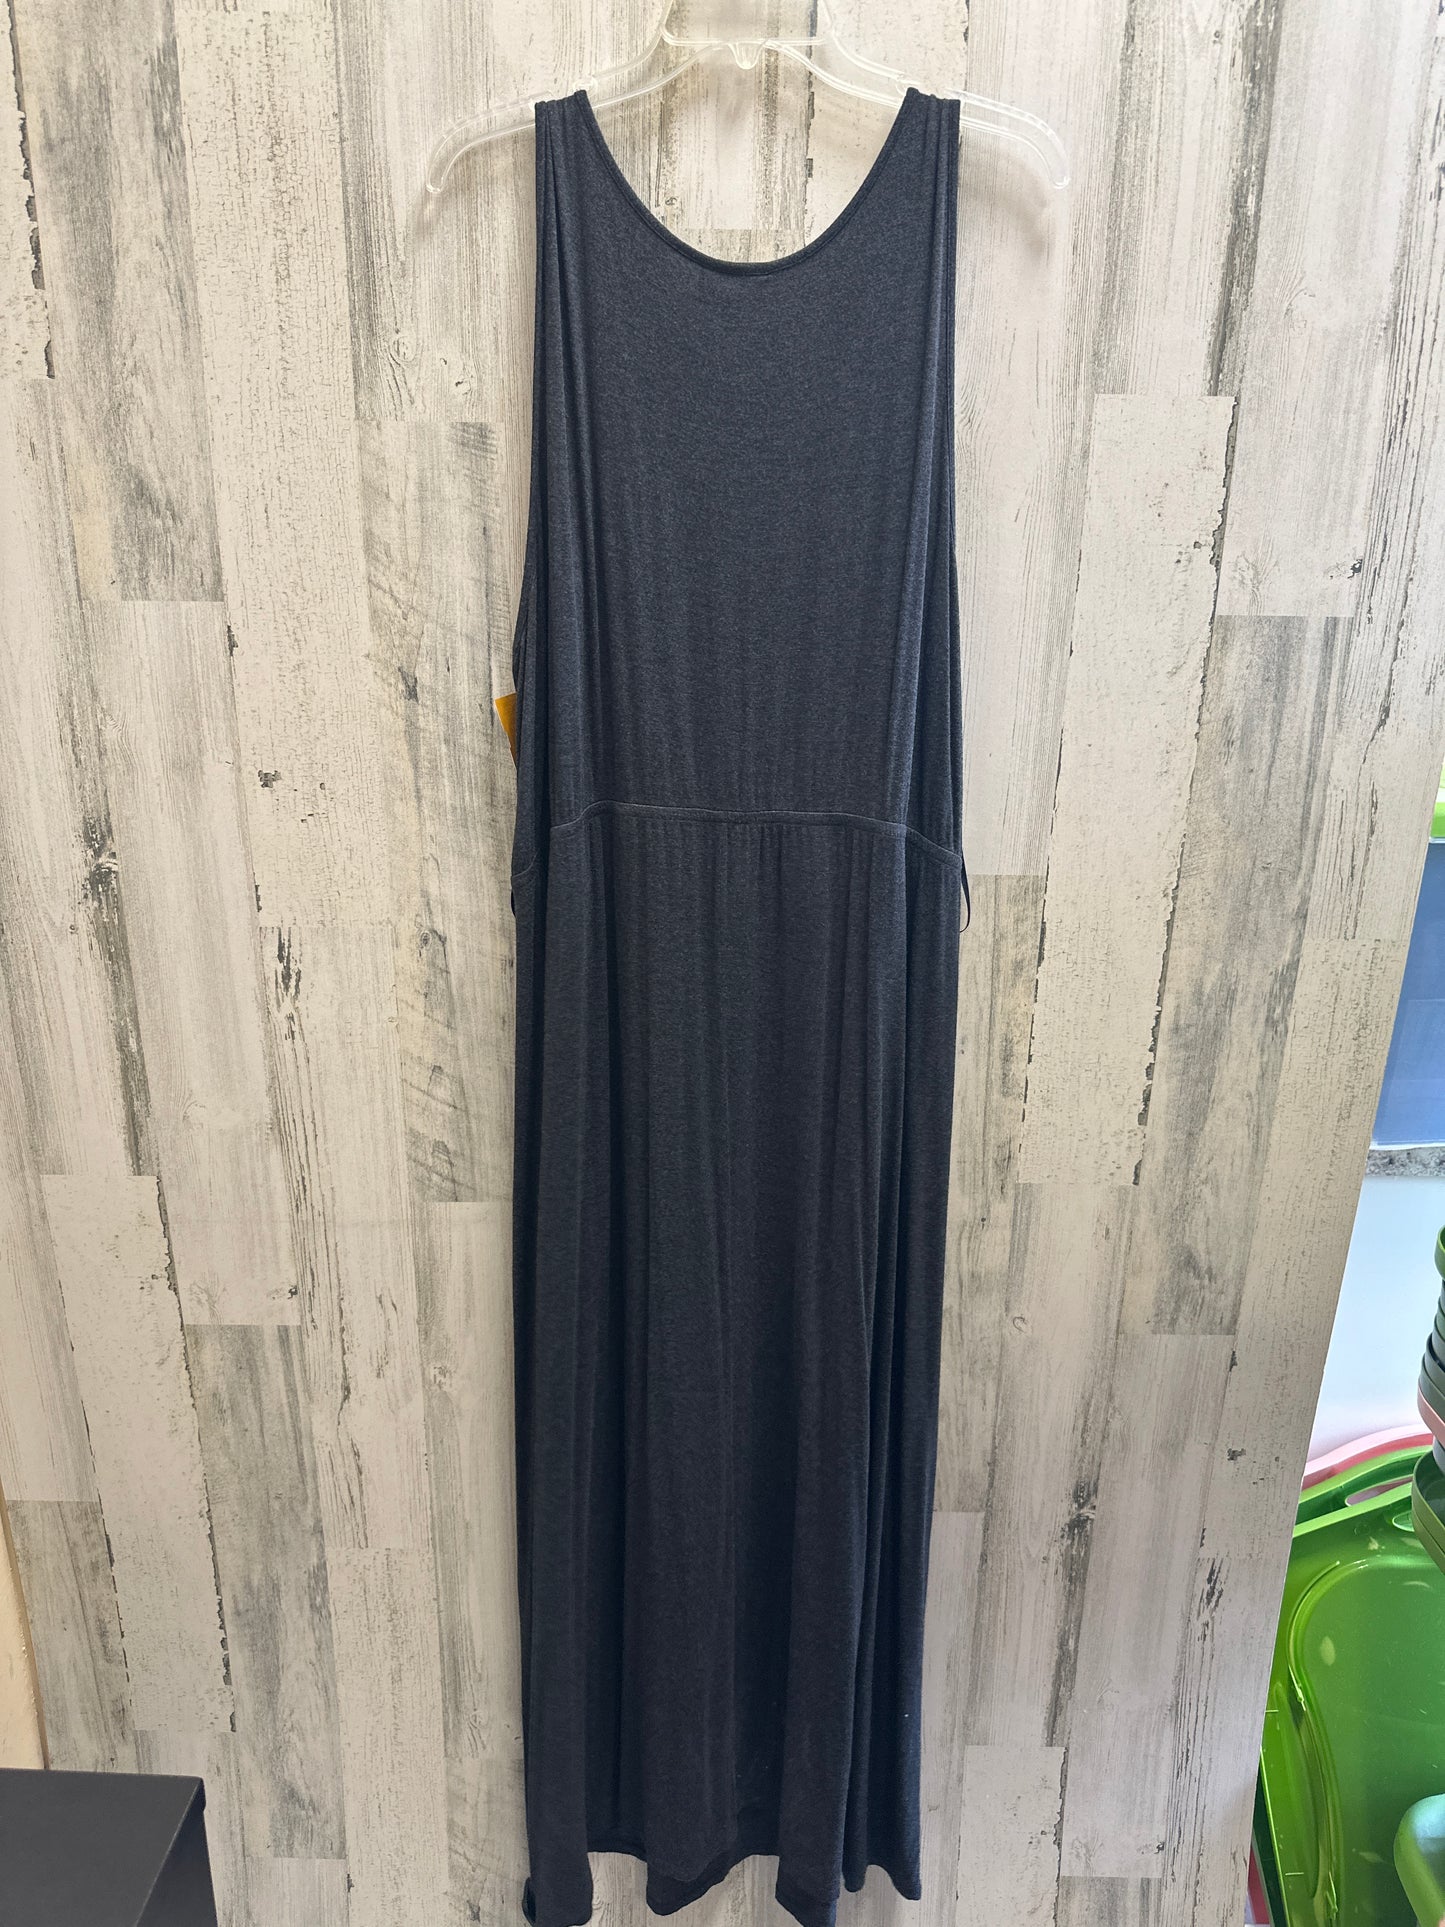 Dress Casual Midi By Lane Bryant  Size: 3x